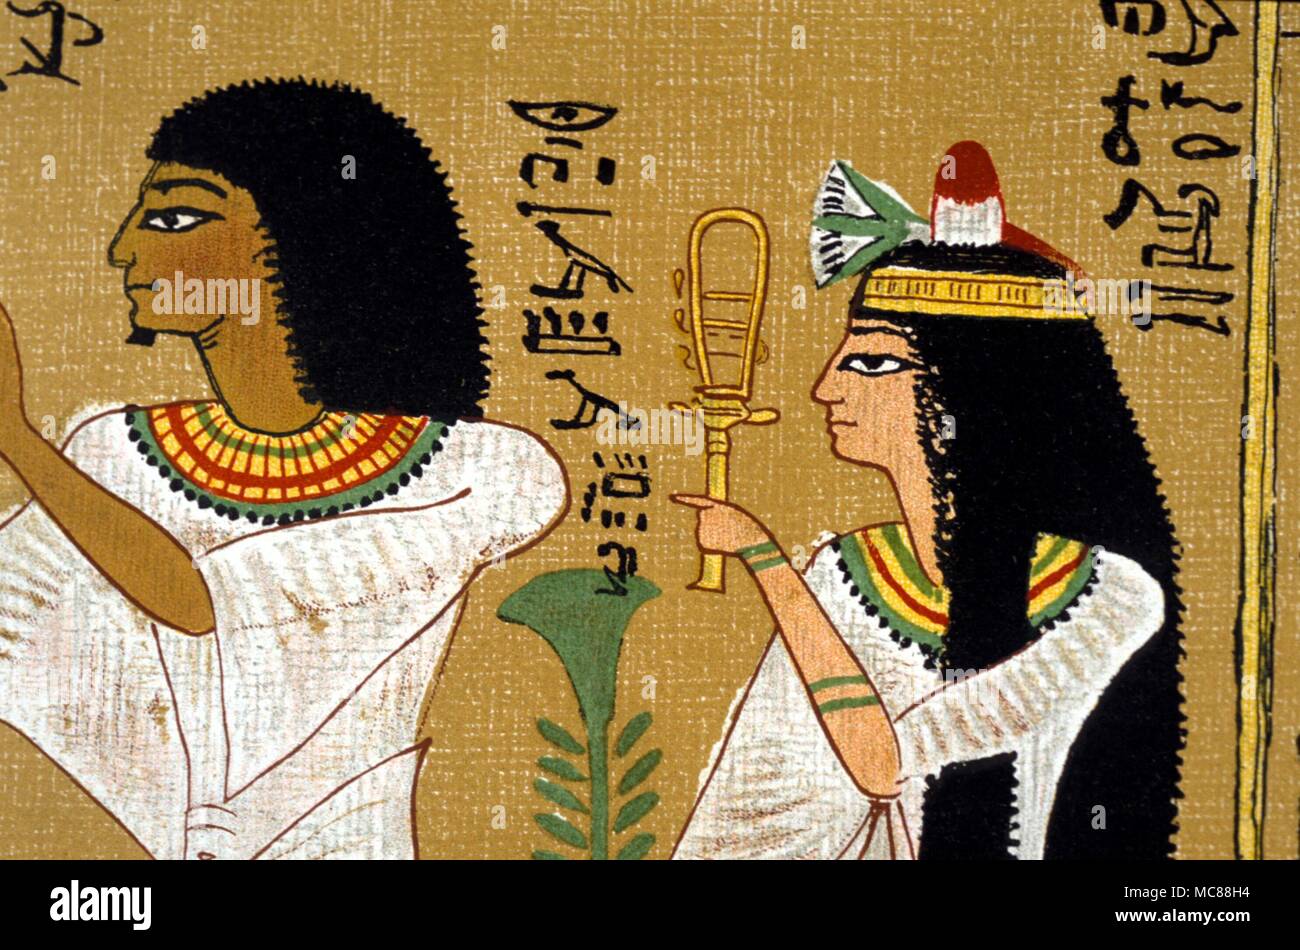 Mythe égyptien - SISTRE le défunt Hunefer avec femme (tenant le sistre sacré. Tous deux dans l'adoration des dieux. Copie de la lithographie du 19ème siècle - Livre des morts égyptien. Banque D'Images